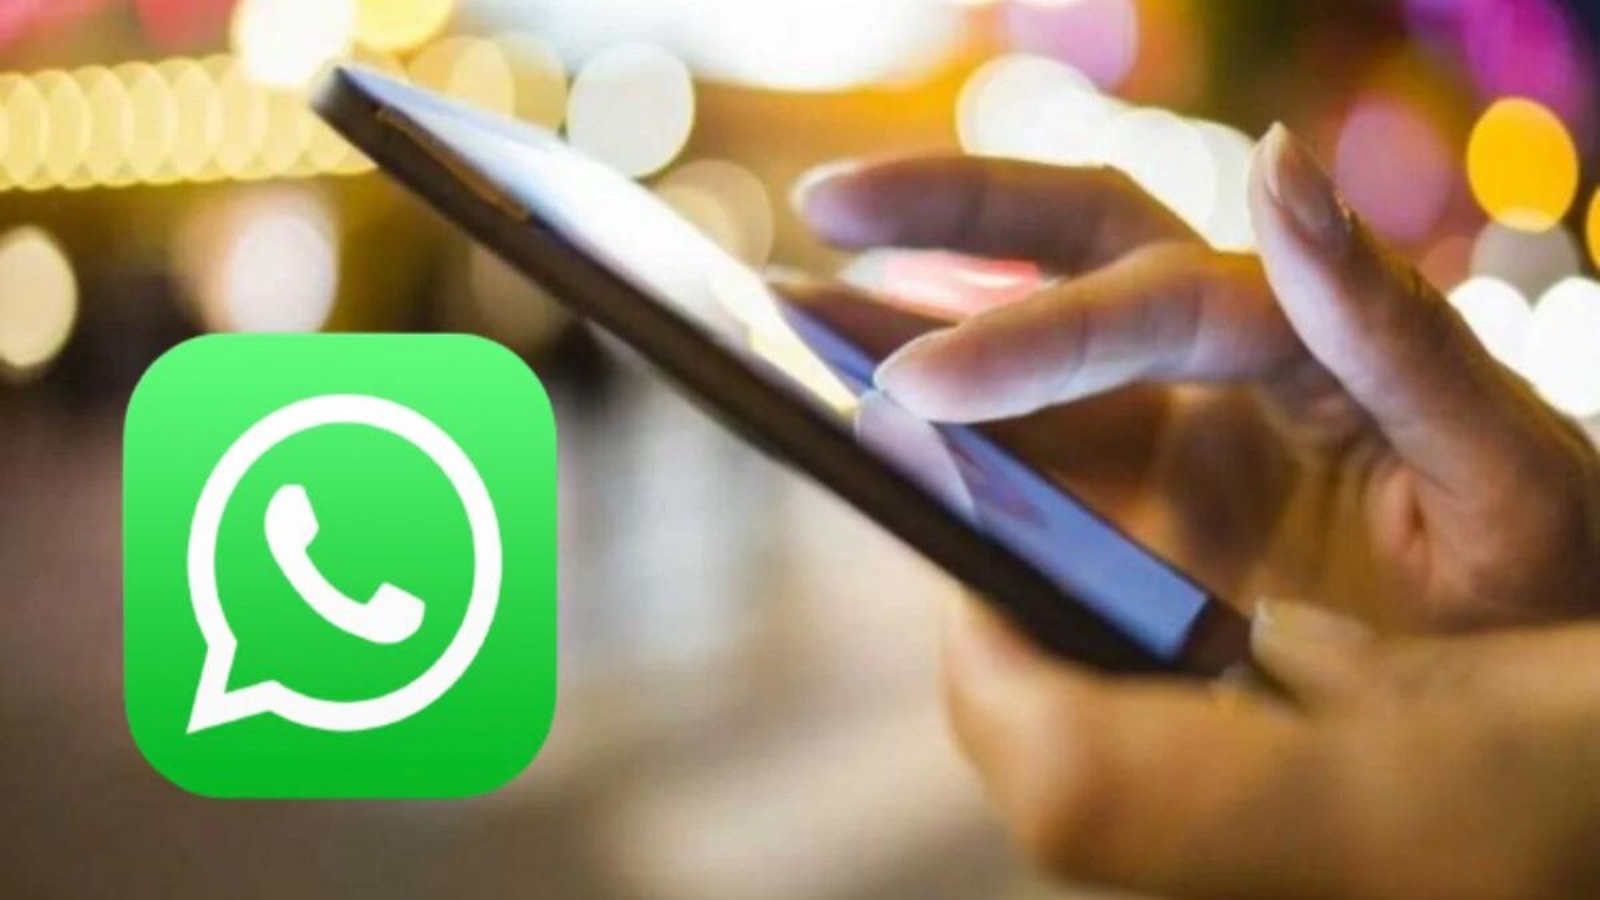 WhatsApp, aggiornamento di ottobre FAVOLOSO: cosa cambia